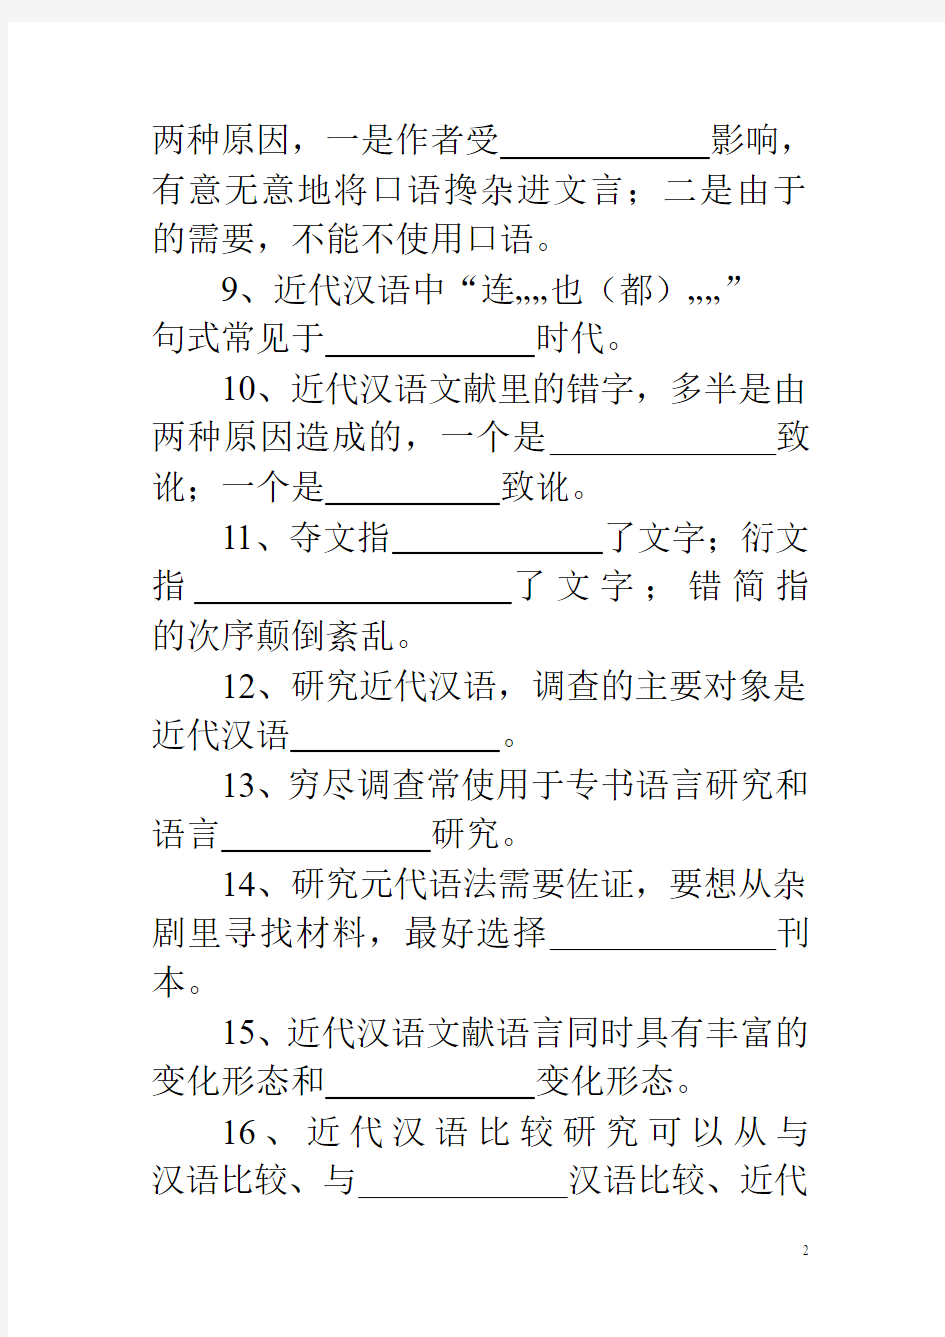 《汉语近代语言研究》(本)平时作业